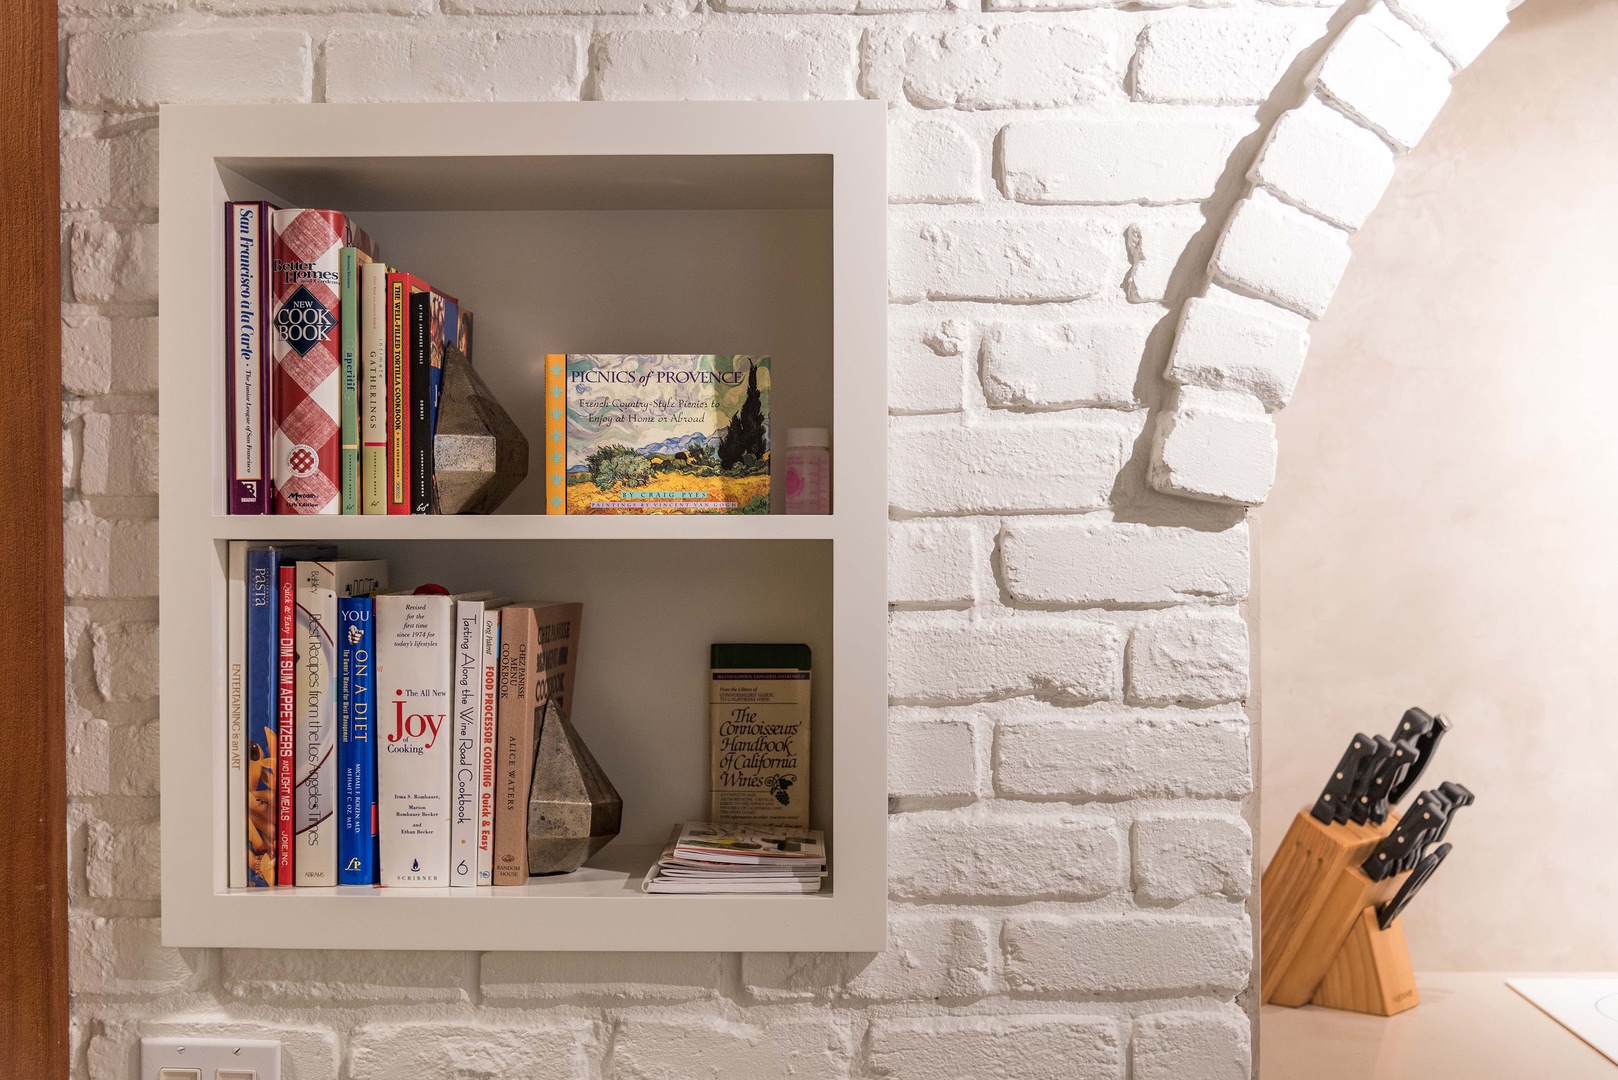 Shelf with cookbooks